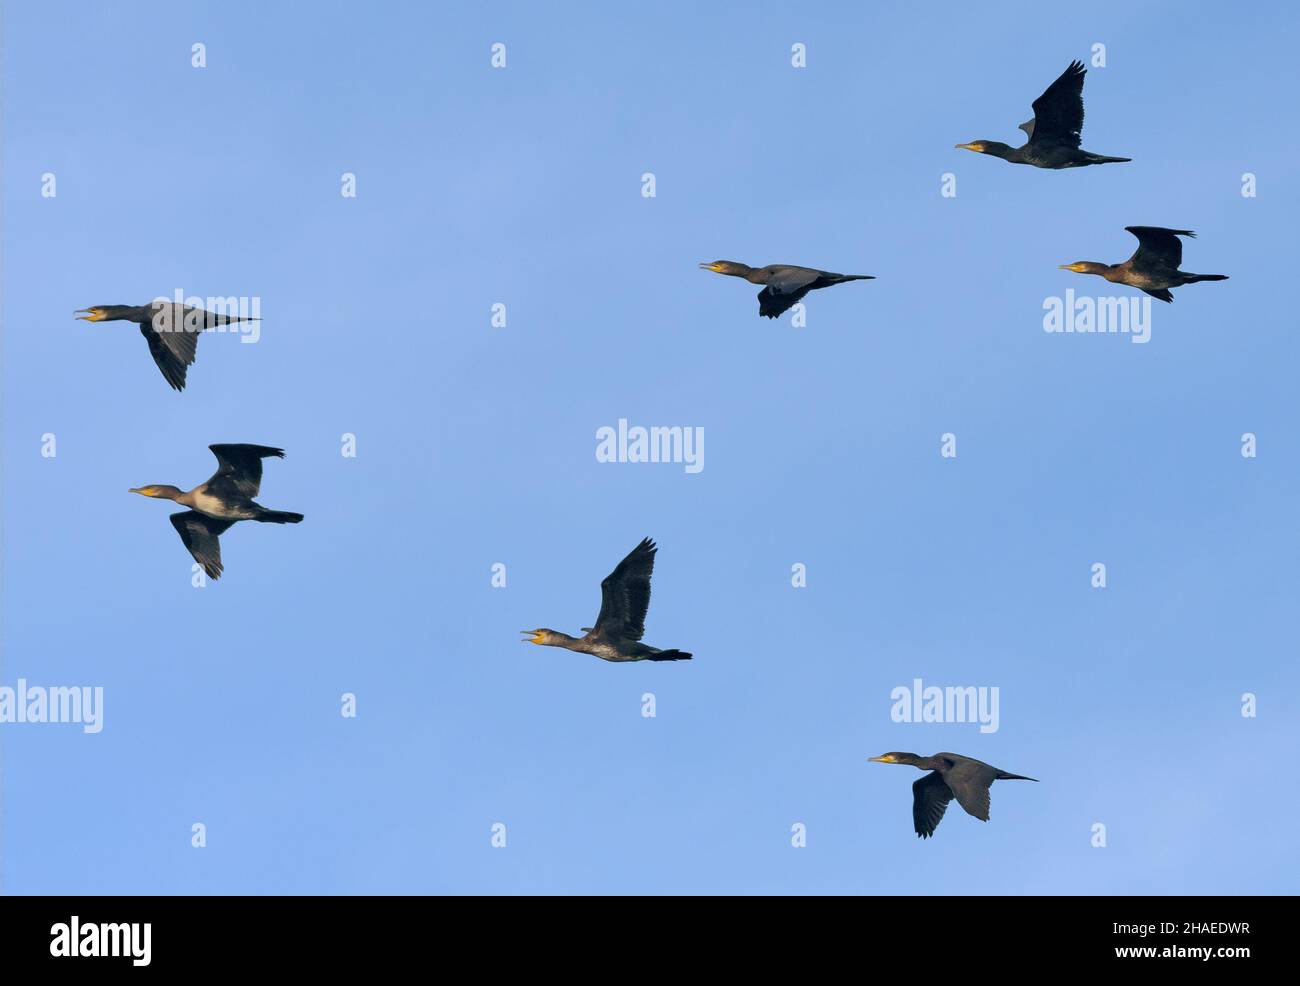 Grand troupeau de grands cormorans (Phalacrocorax carbo) volant ensemble dans le ciel bleu Banque D'Images